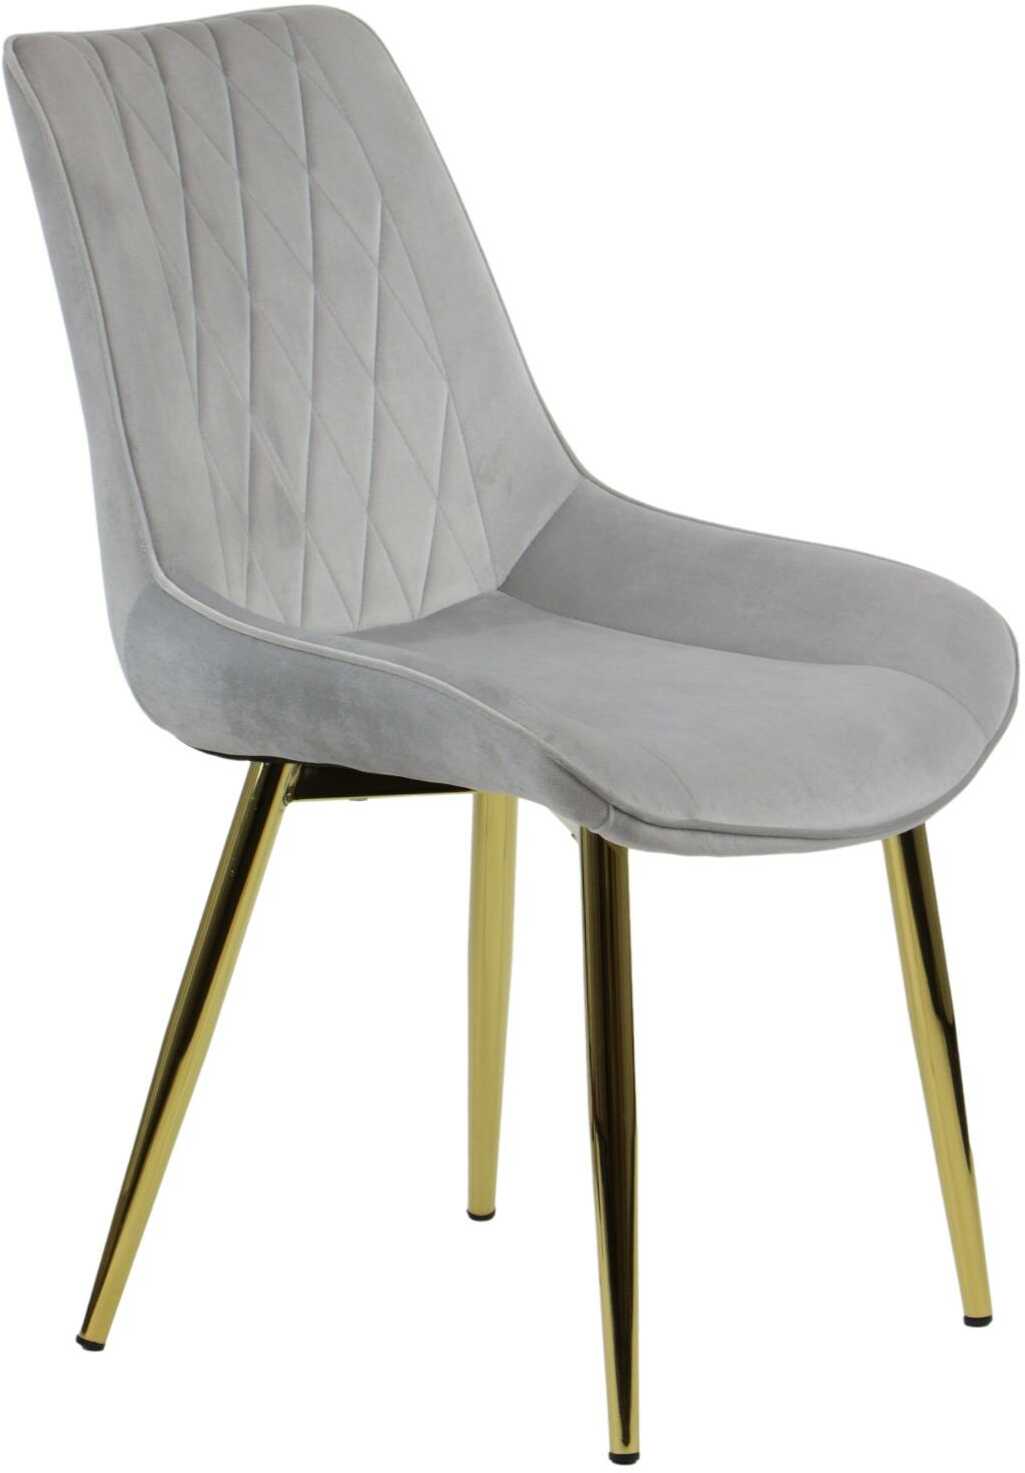 Krzesło tapicerowane do salonu, jadalni i restauracji HTS-6020 - jasny szary, stelaż złoty